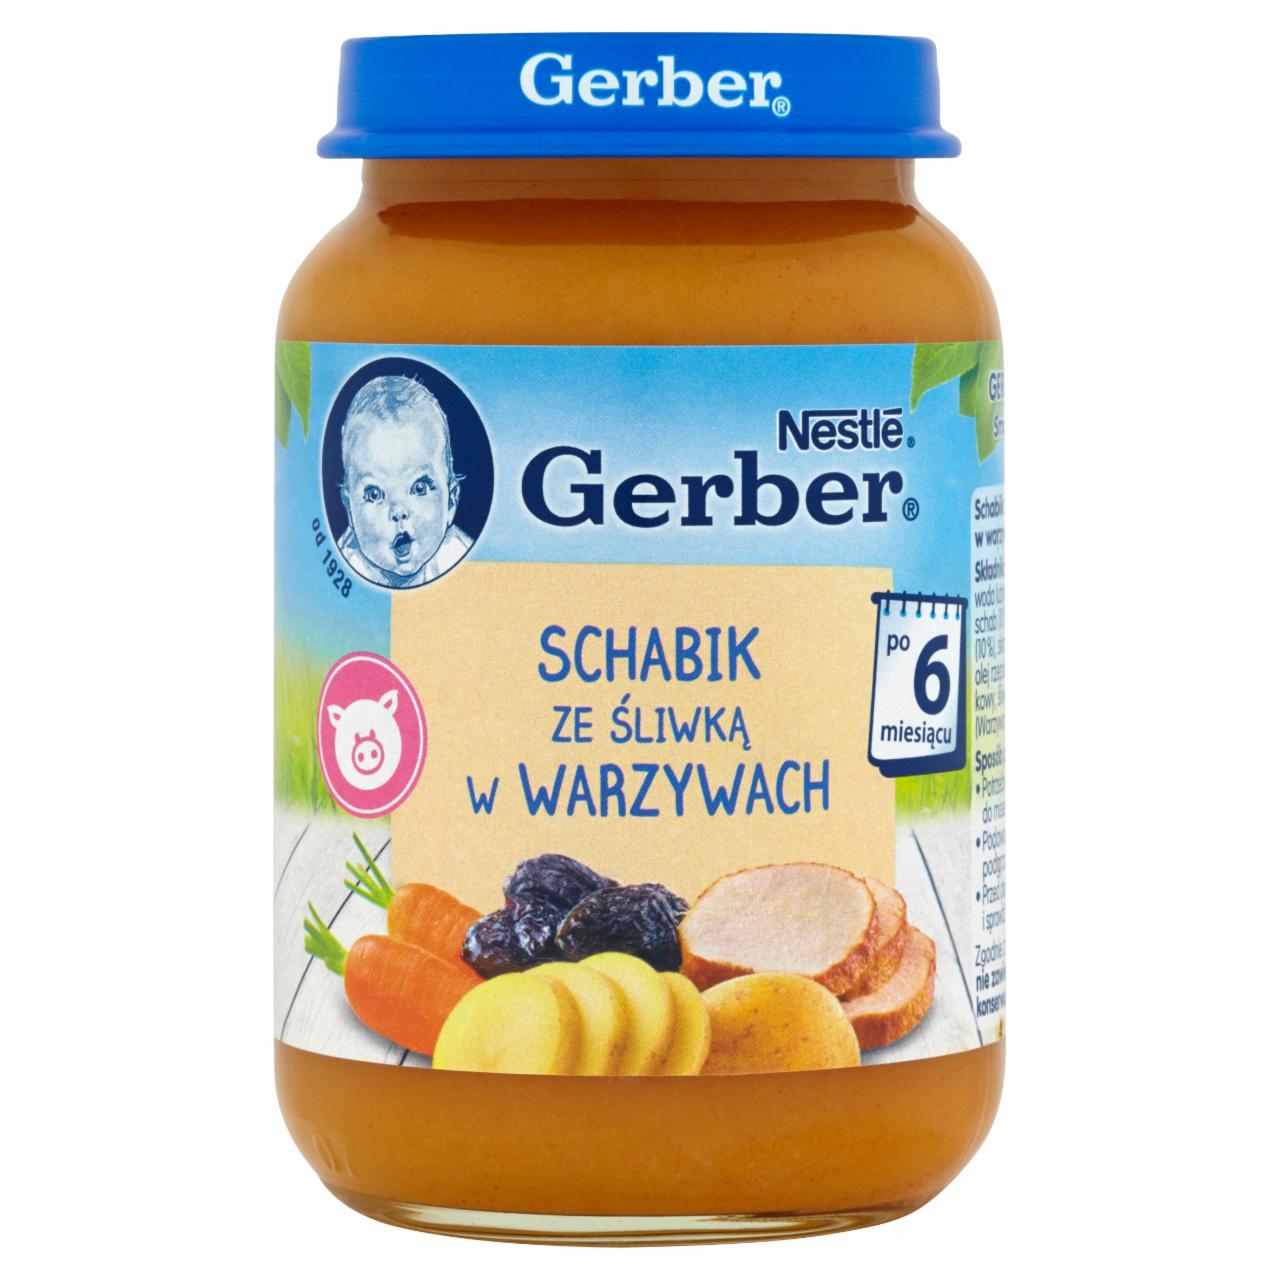 Zdjęcia - Gerber Schabik ze śliwką w warzywach dla niemowląt po 6. miesiącu 190 g